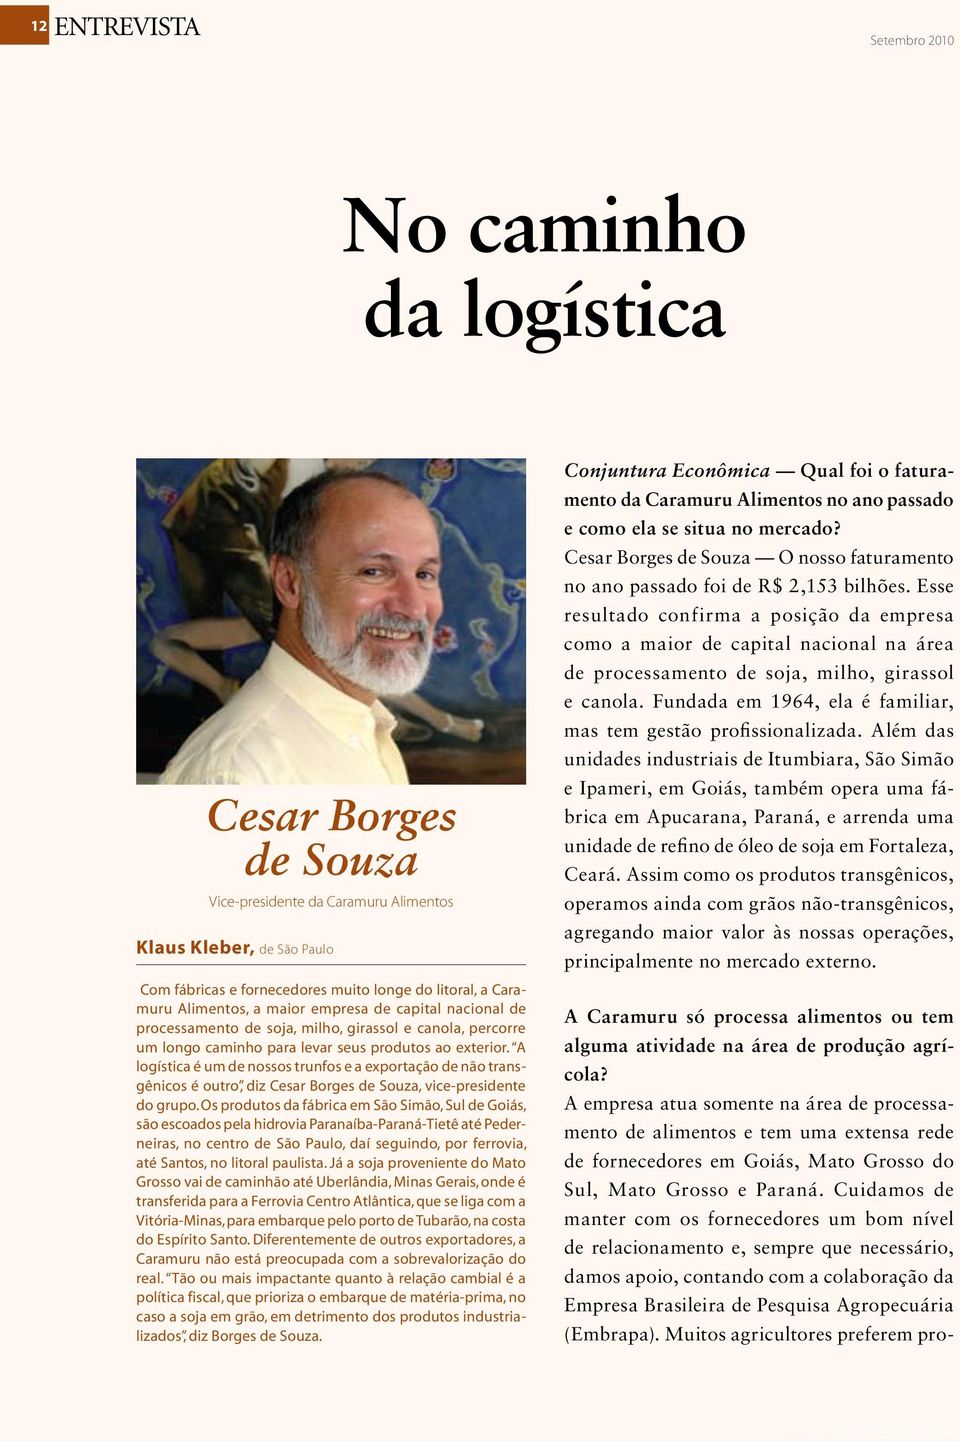 A logística é um de nossos trunfos e a exportação de não transgênicos é outro, diz Cesar Borges de Souza, vice-presidente do grupo.